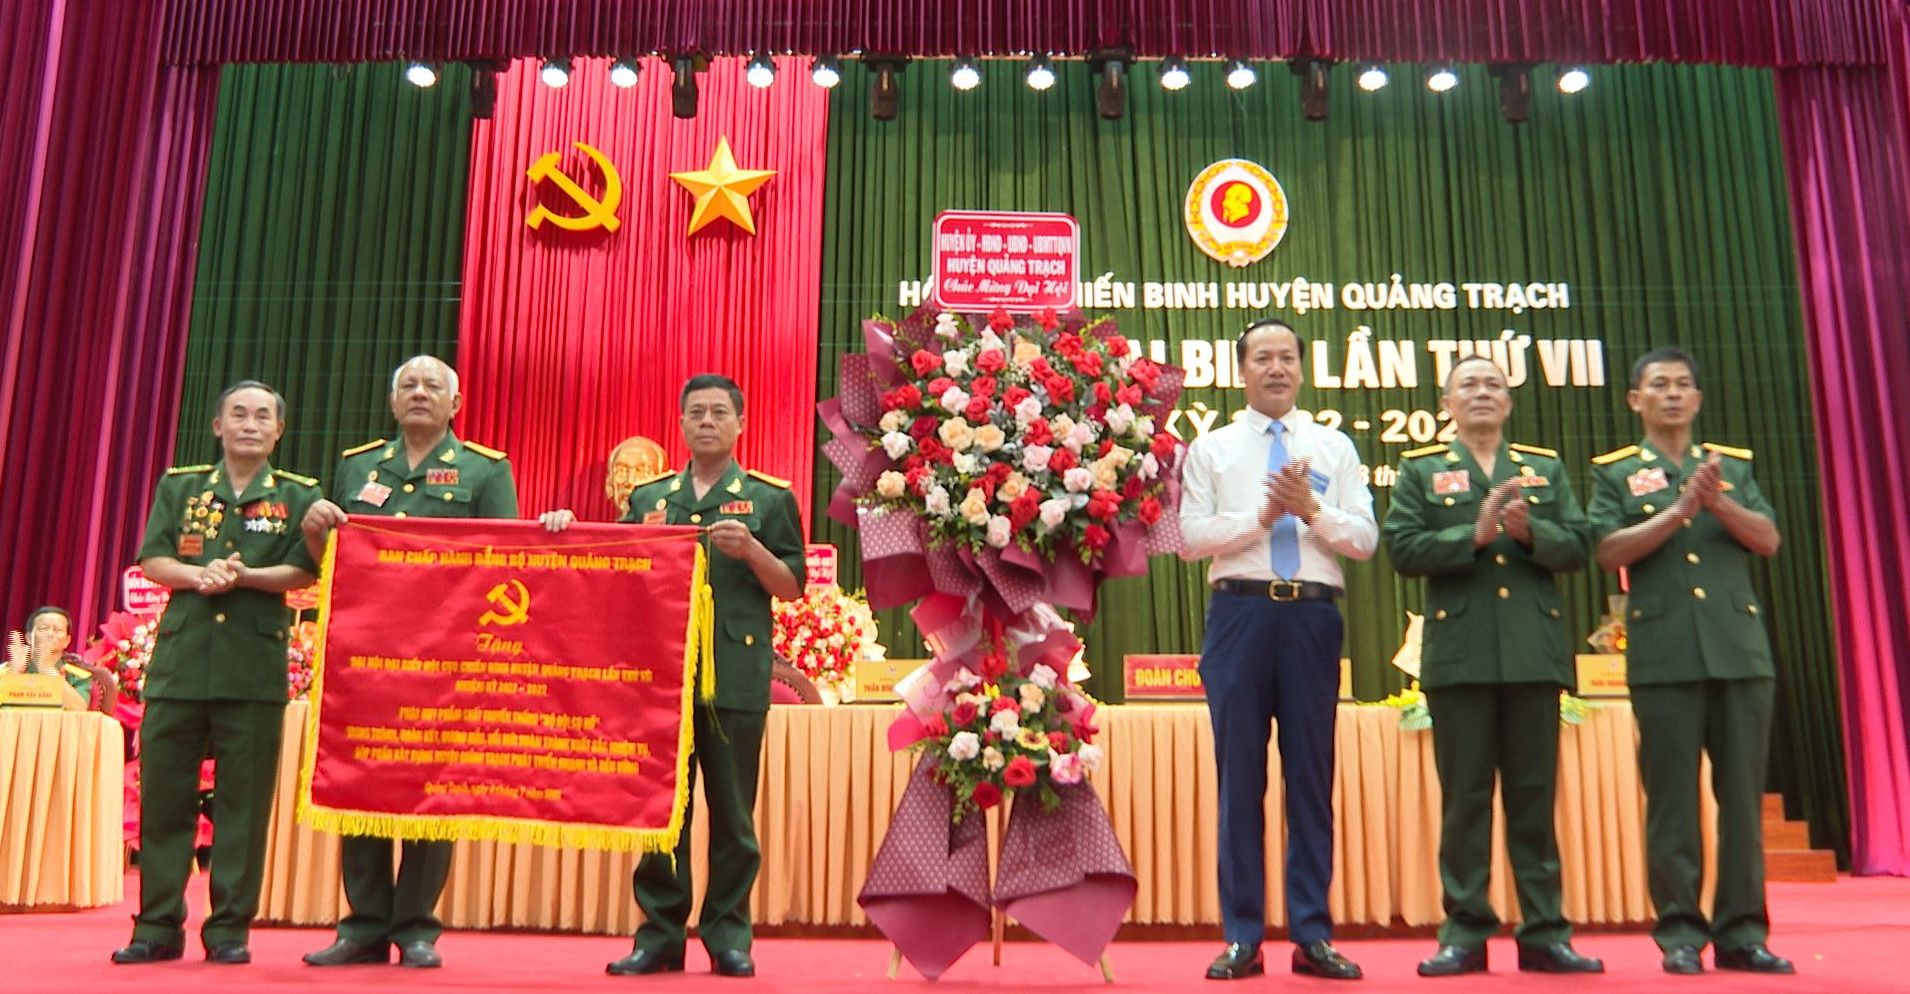 Lãnh đạo huyện Quảng Trạch tặng hoa và bức trướng chúc mừng đại hội.